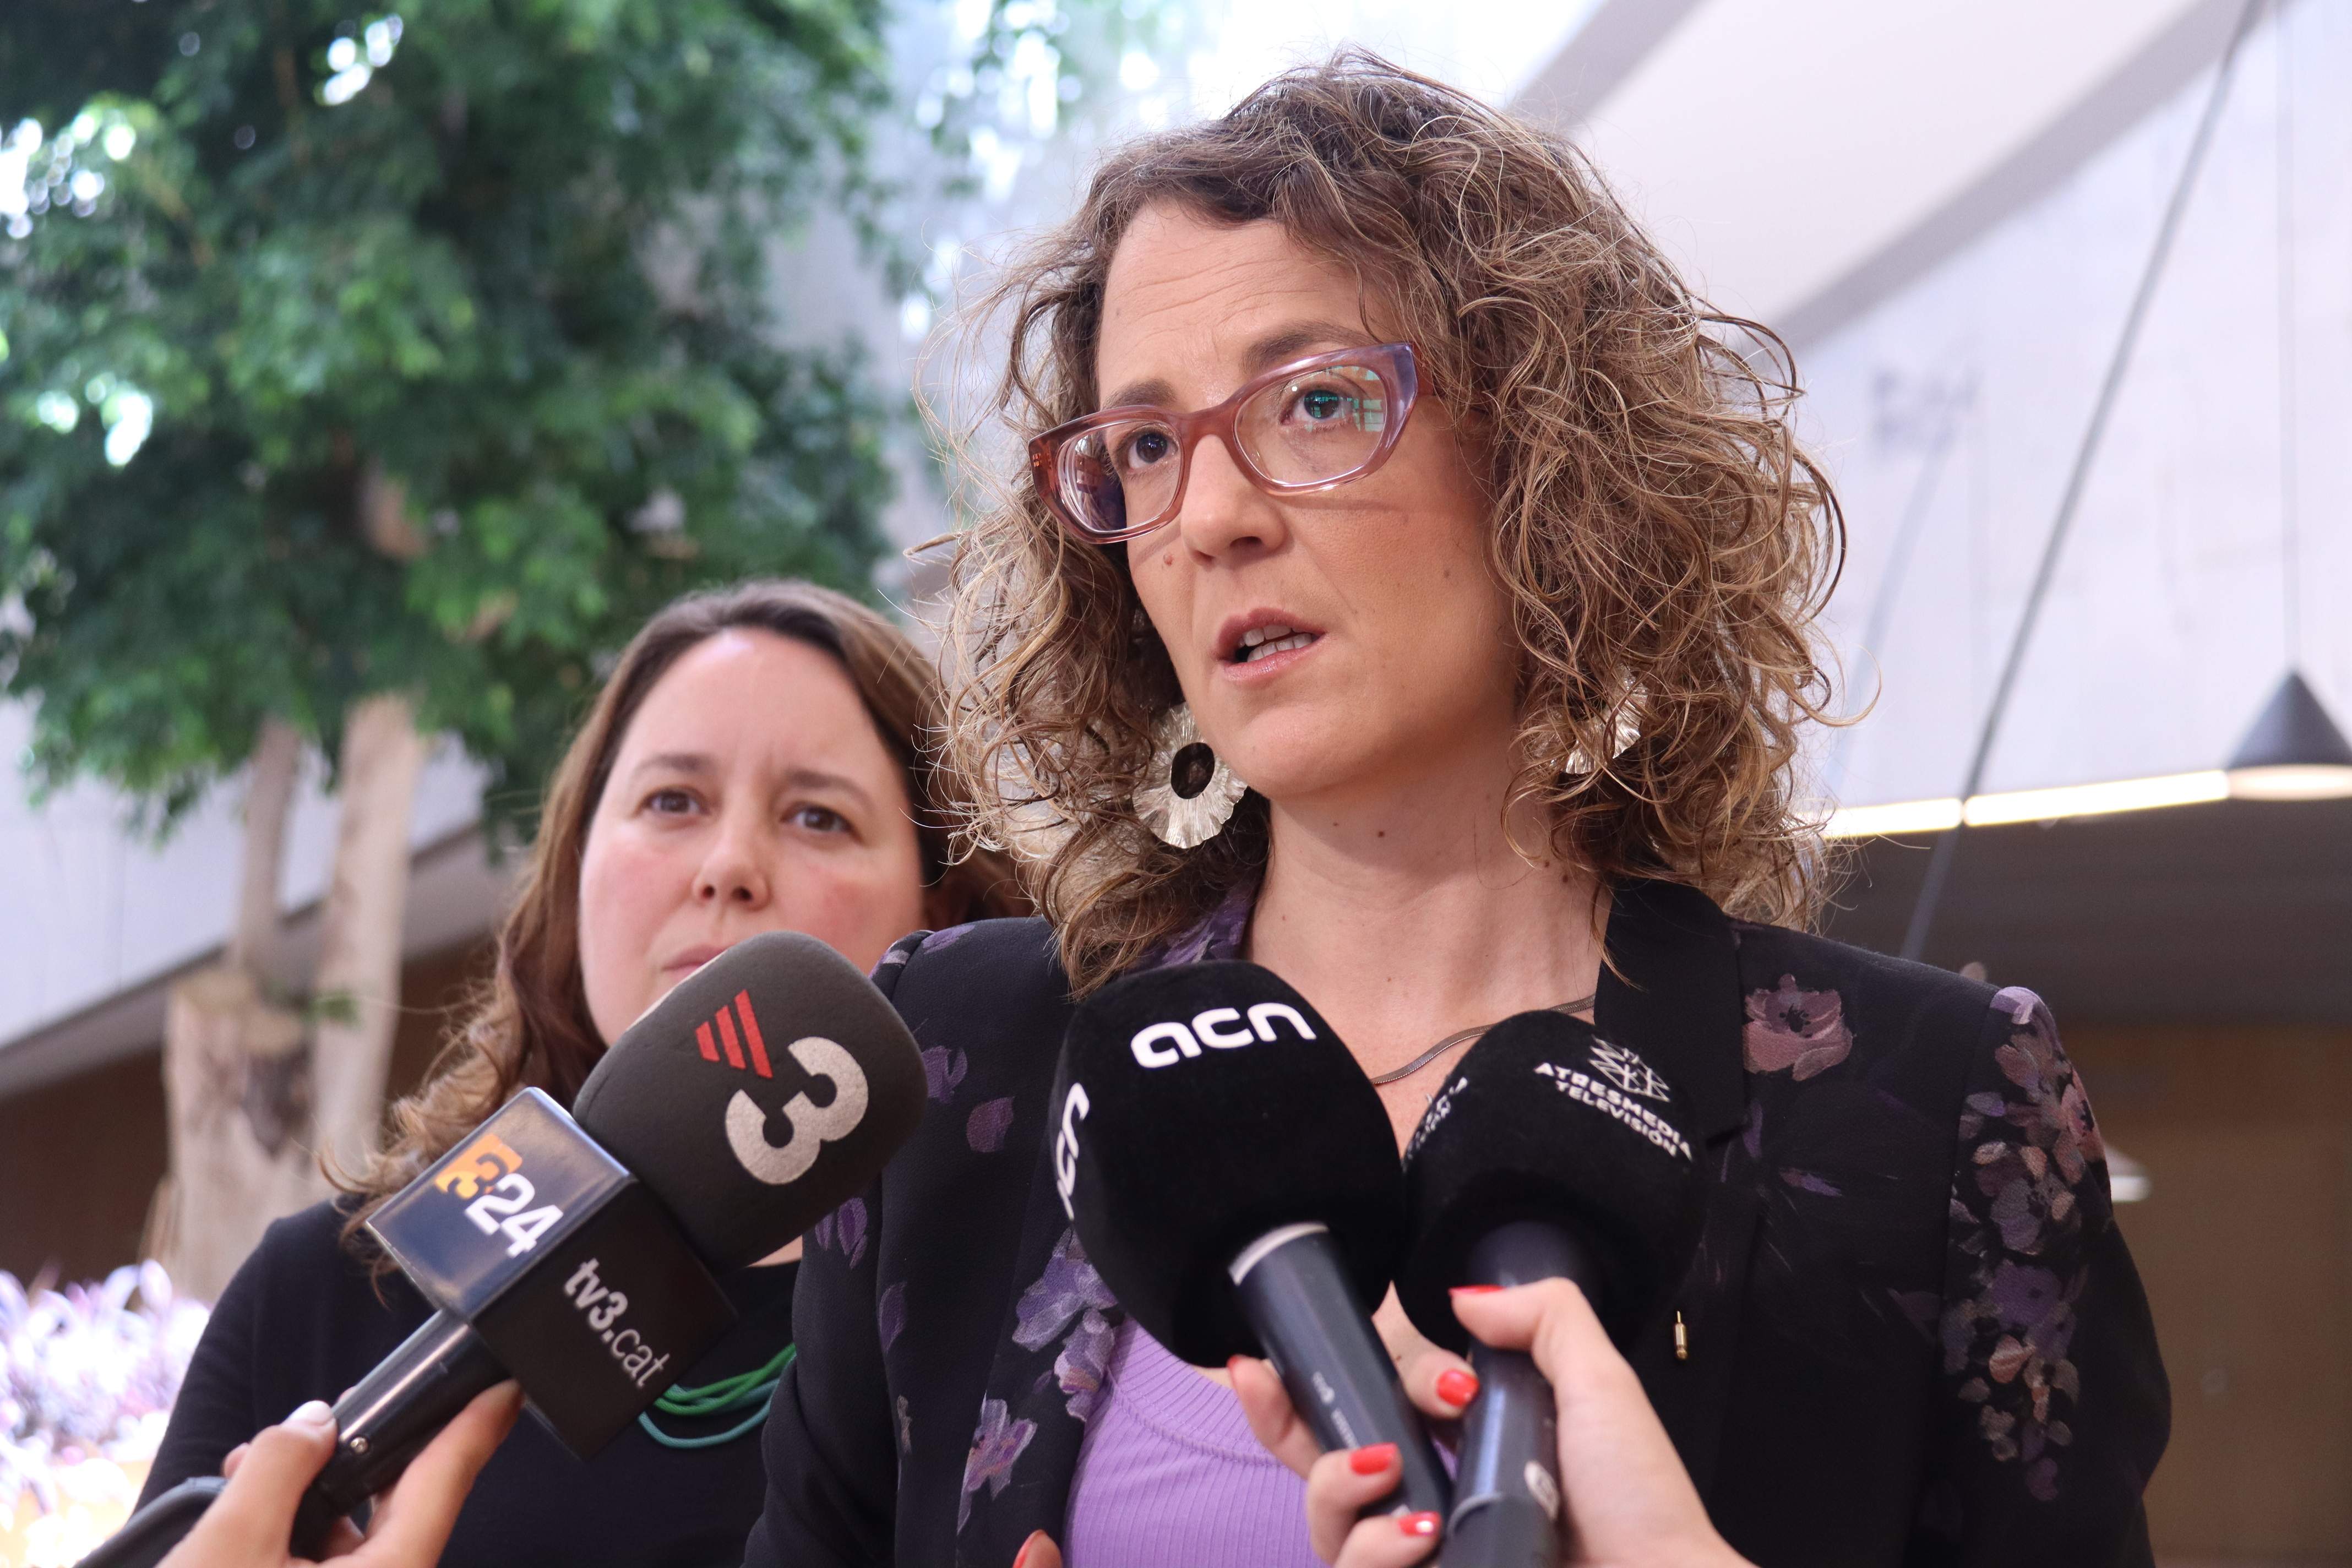 Verge condemna els feminicidis de Sabadell i Salou i demana un "canvi social" per erradicar-los